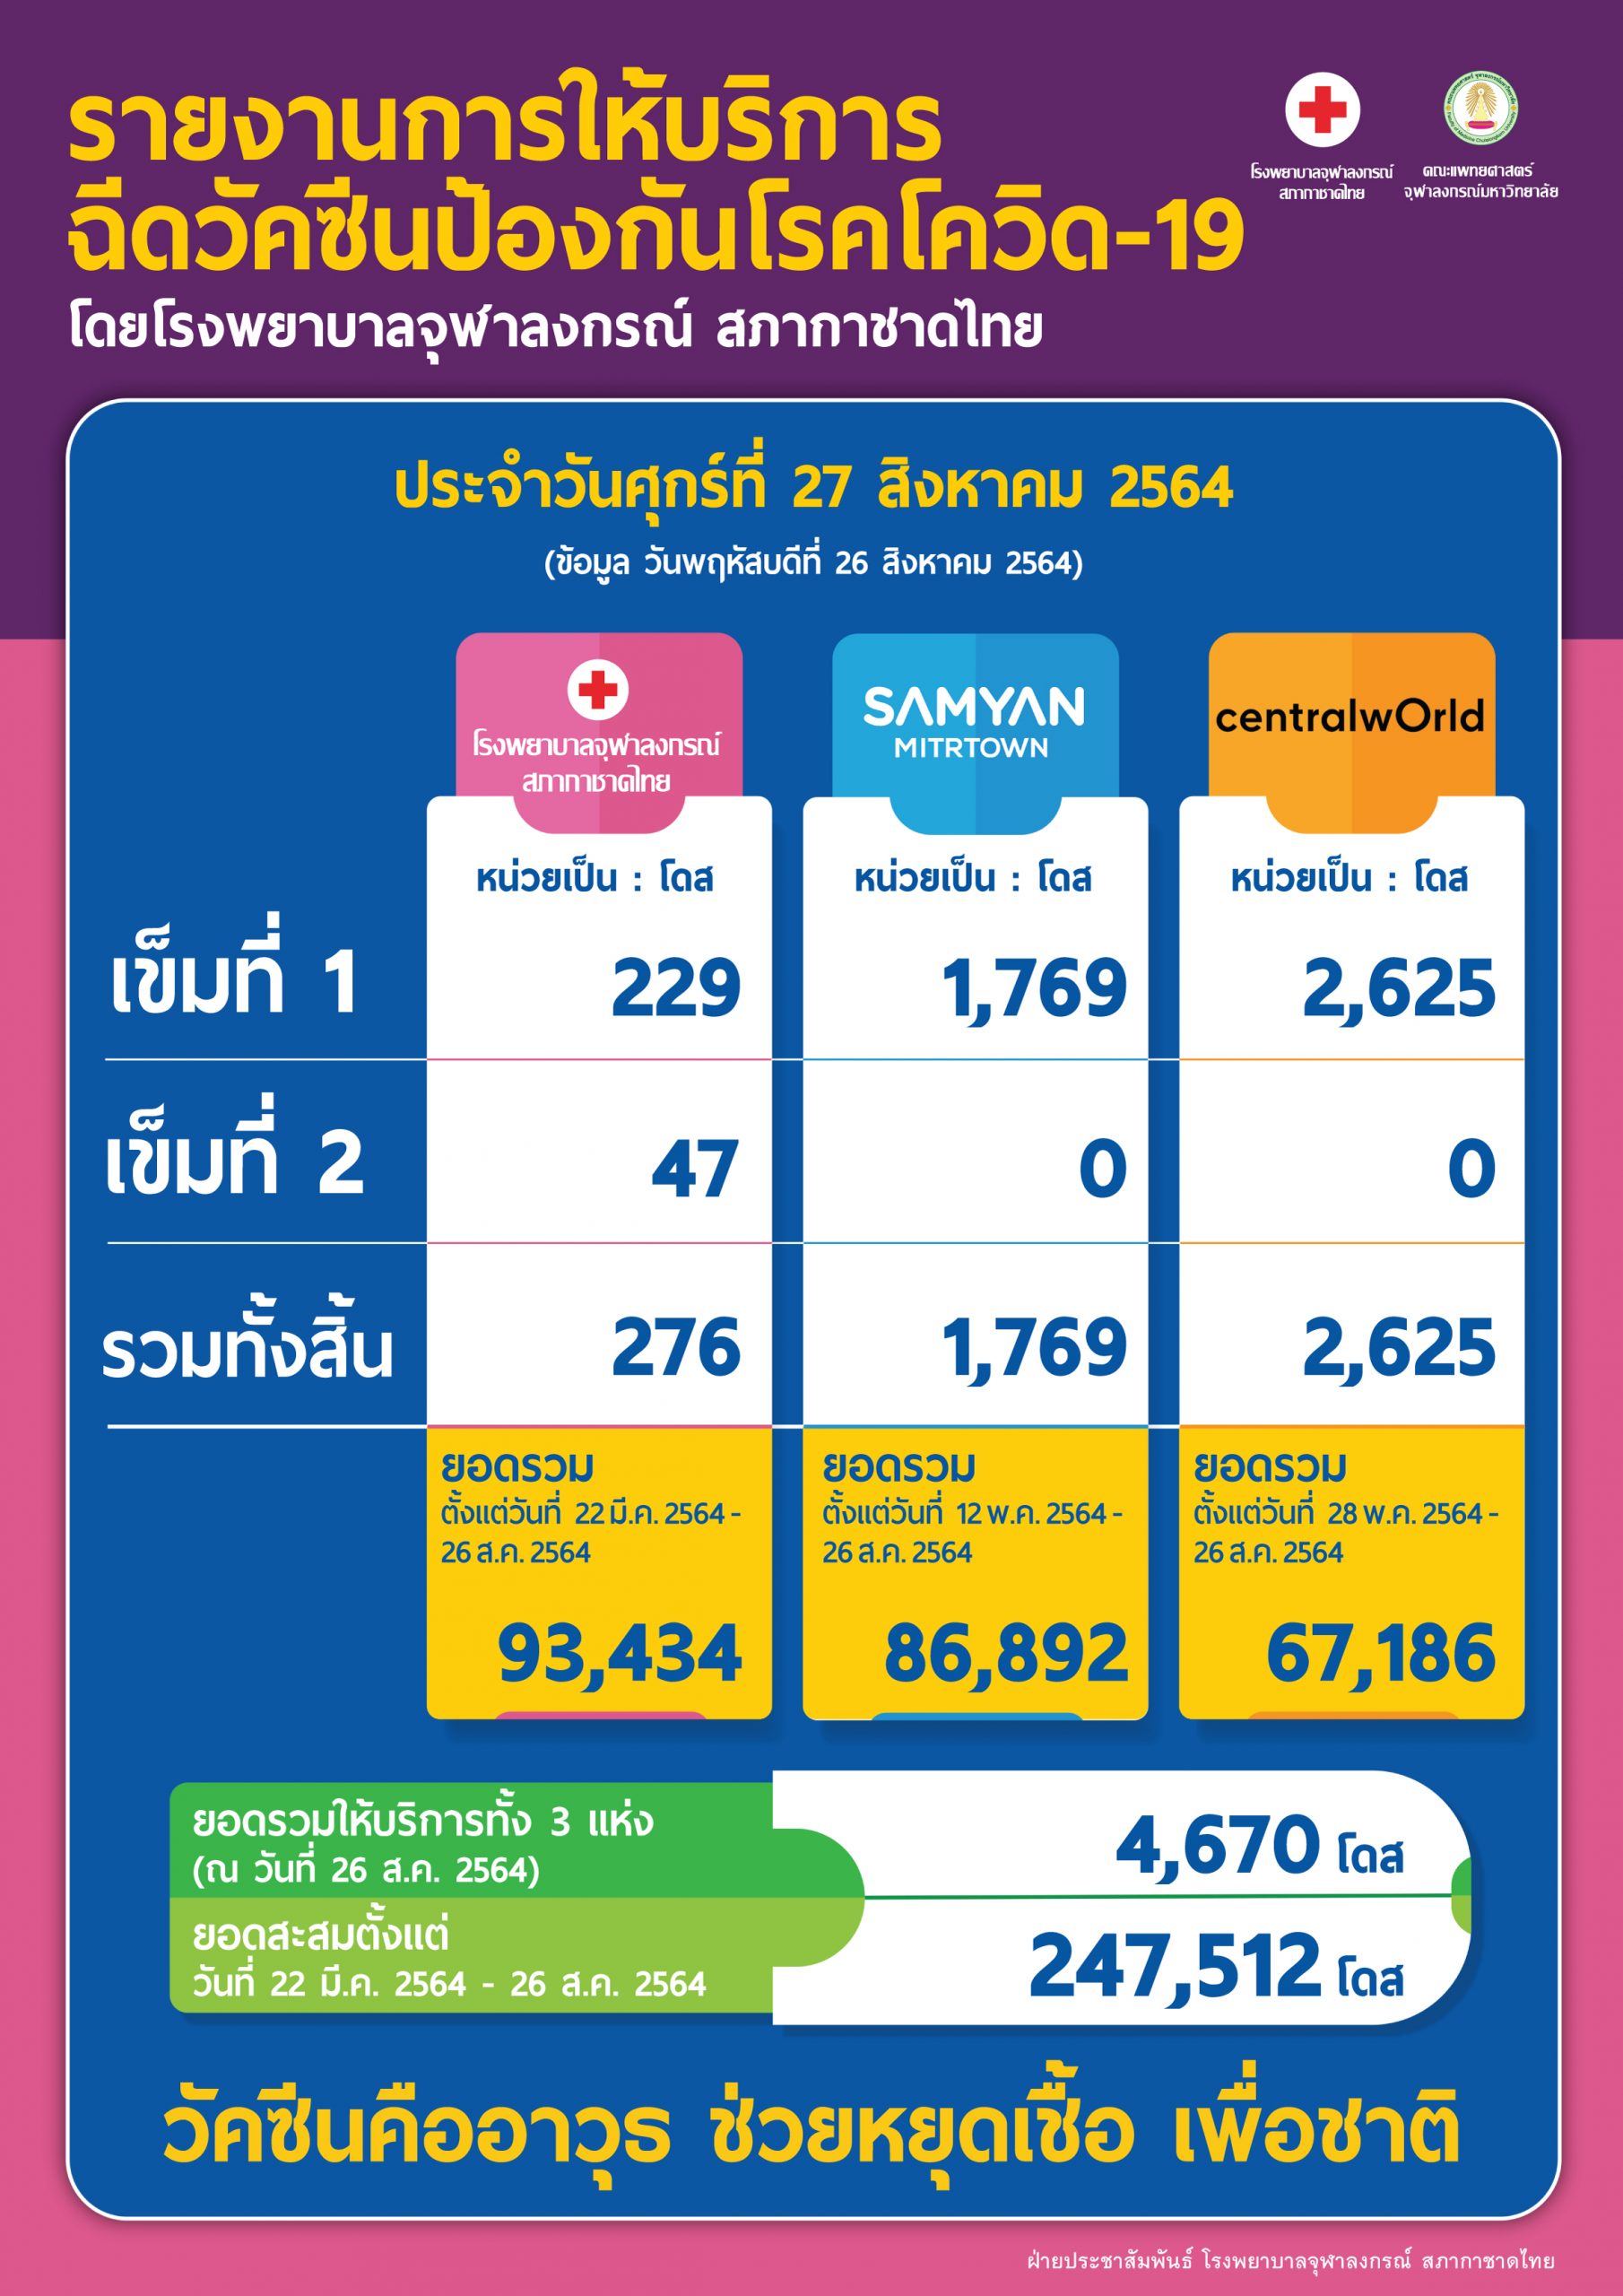 รายงานการให้บริการฉีดวัคซีนป้องกันโรคโควิด-19 โดยโรงพยาบาลจุฬาลงกรณ์ สภากาชาดไทย ประจำวันศุกร์ที่ 27 สิงหาคม 2564